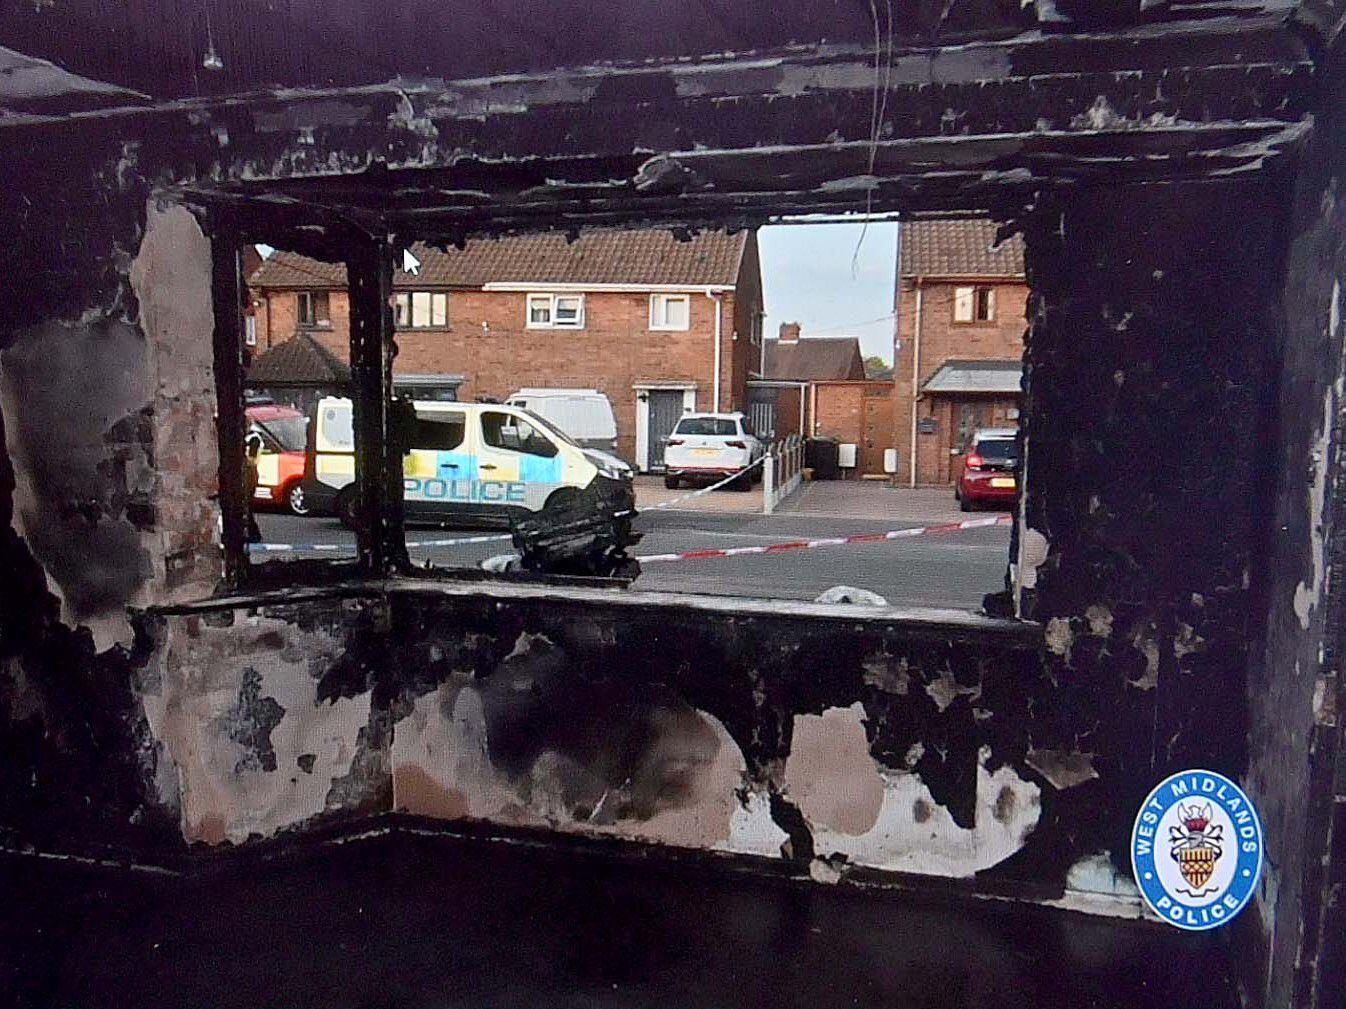 £20,000 reward to help find arson suspect behind Wolverhampton house fire that killed man